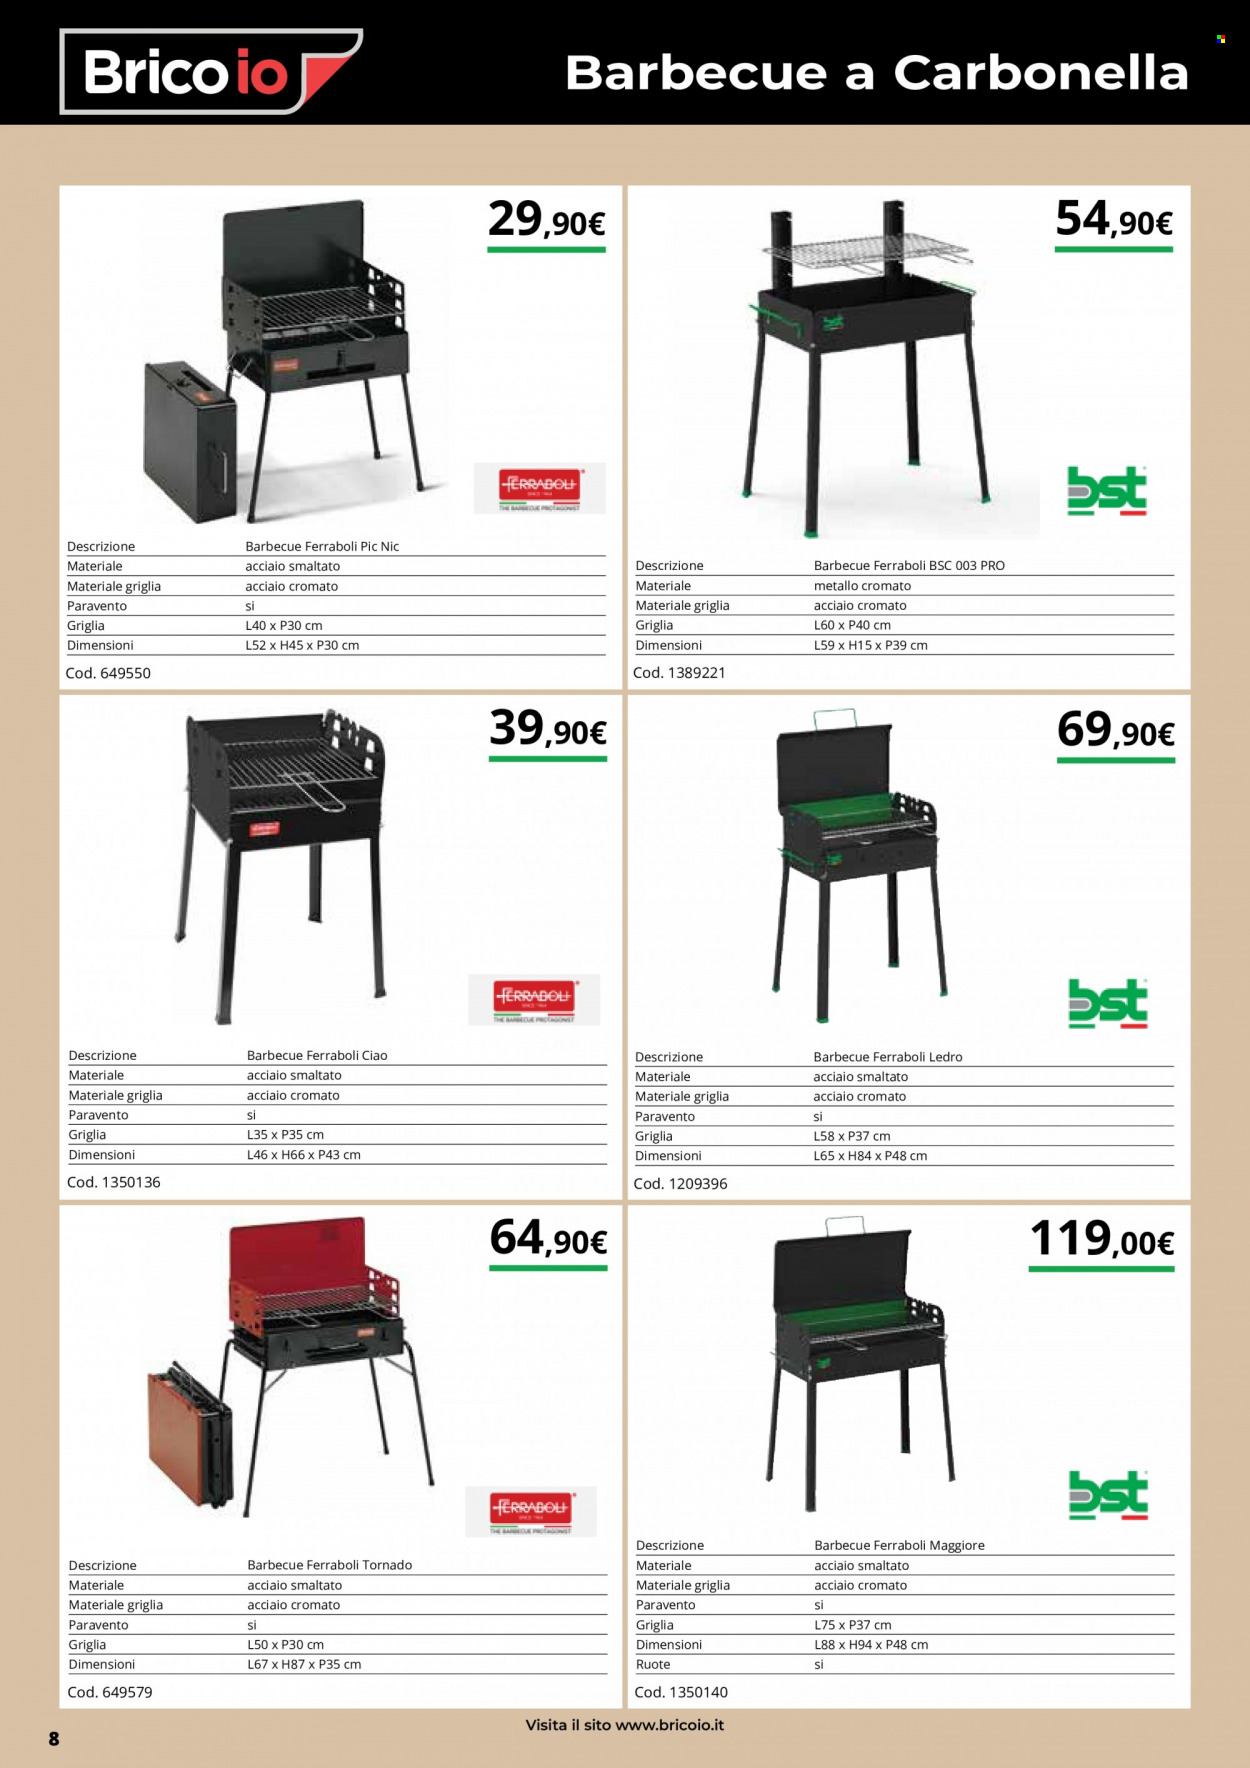 thumbnail - Volantino Brico io - 19/4/2022 - 31/8/2022 - Prodotti in offerta - carbonella, barbecue a carbonella, barbecue. Pagina 8.